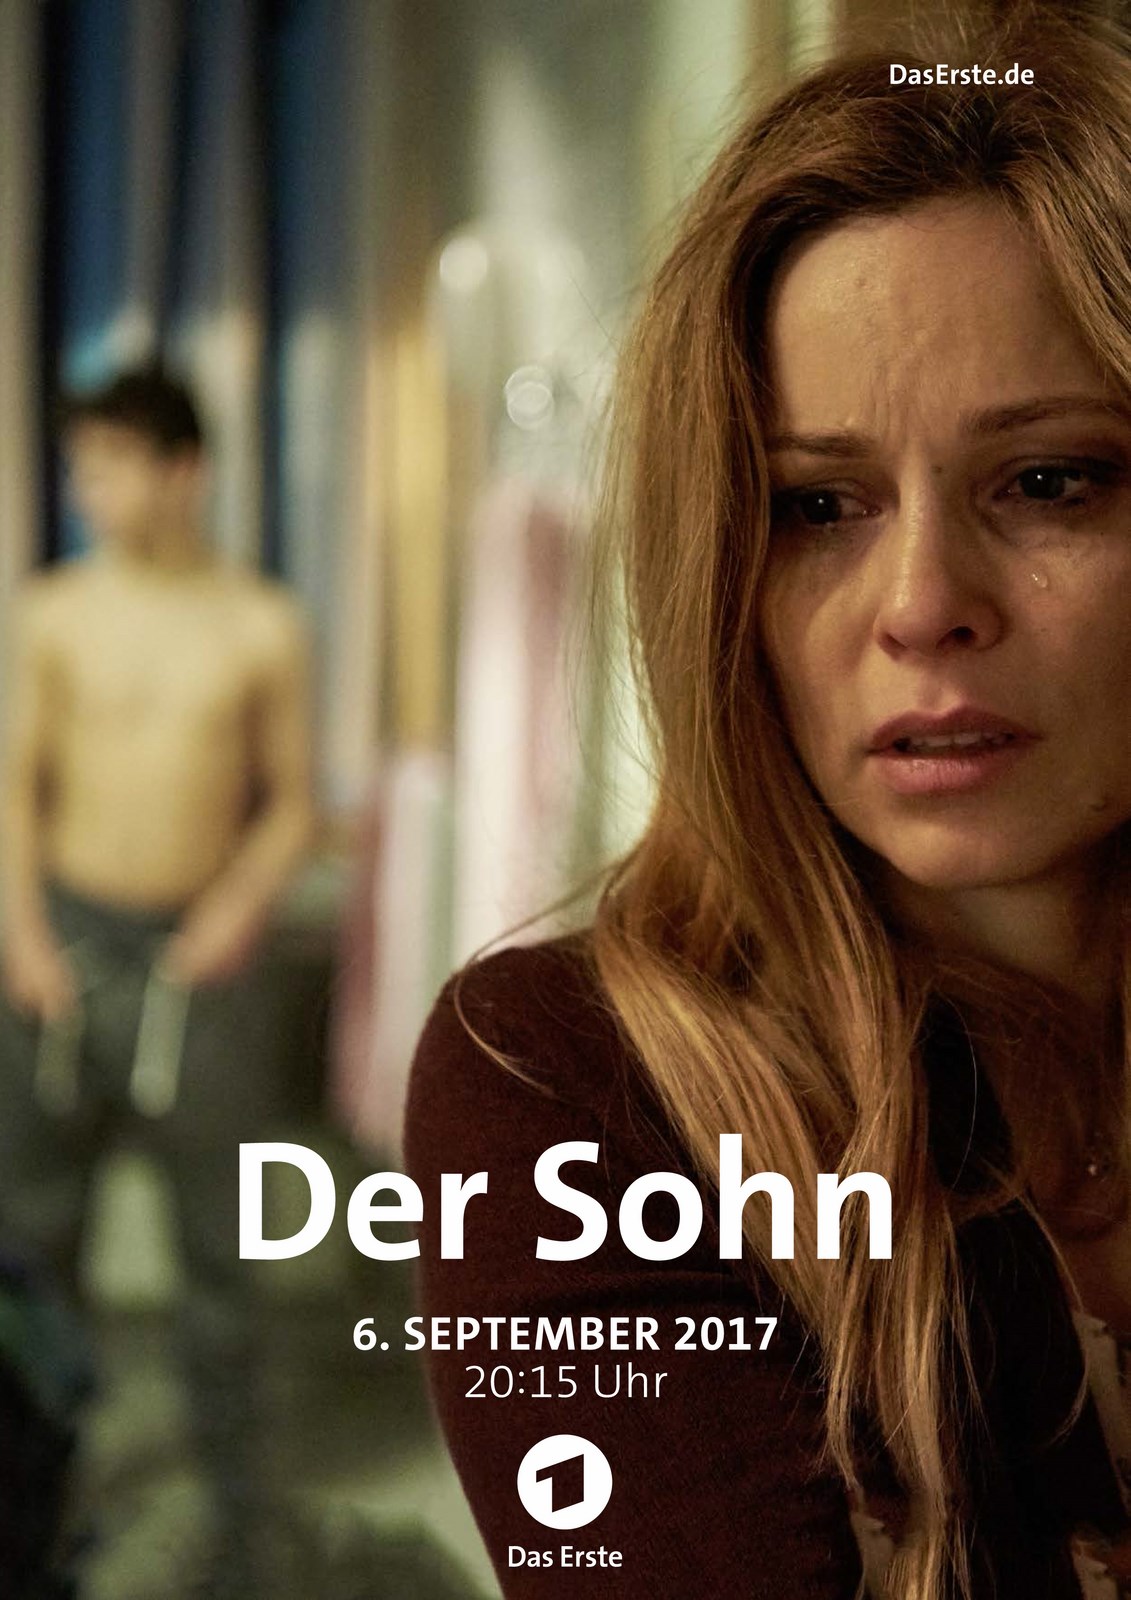 Der Sohn Film 2017 FILMSTARTS.de